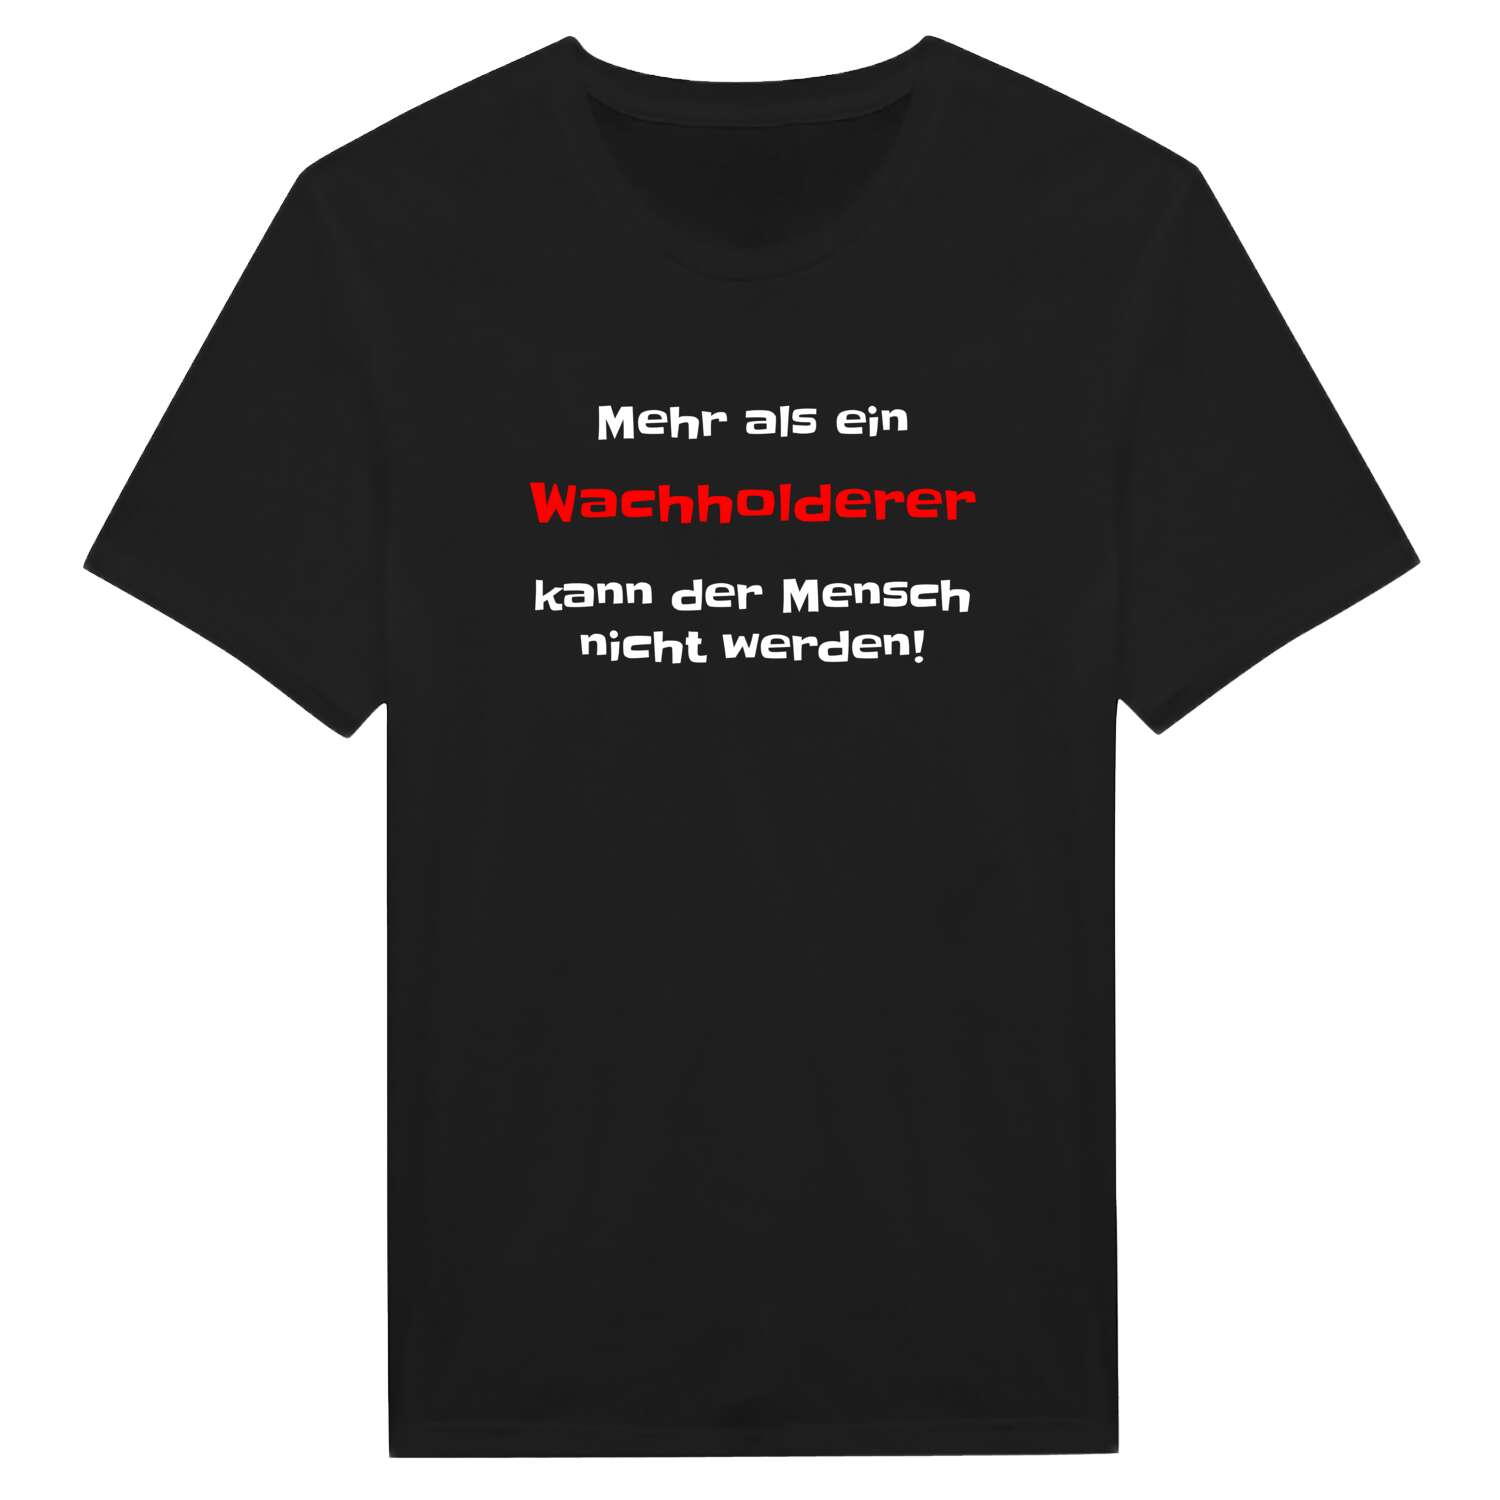 Wachholder T-Shirt »Mehr als ein«